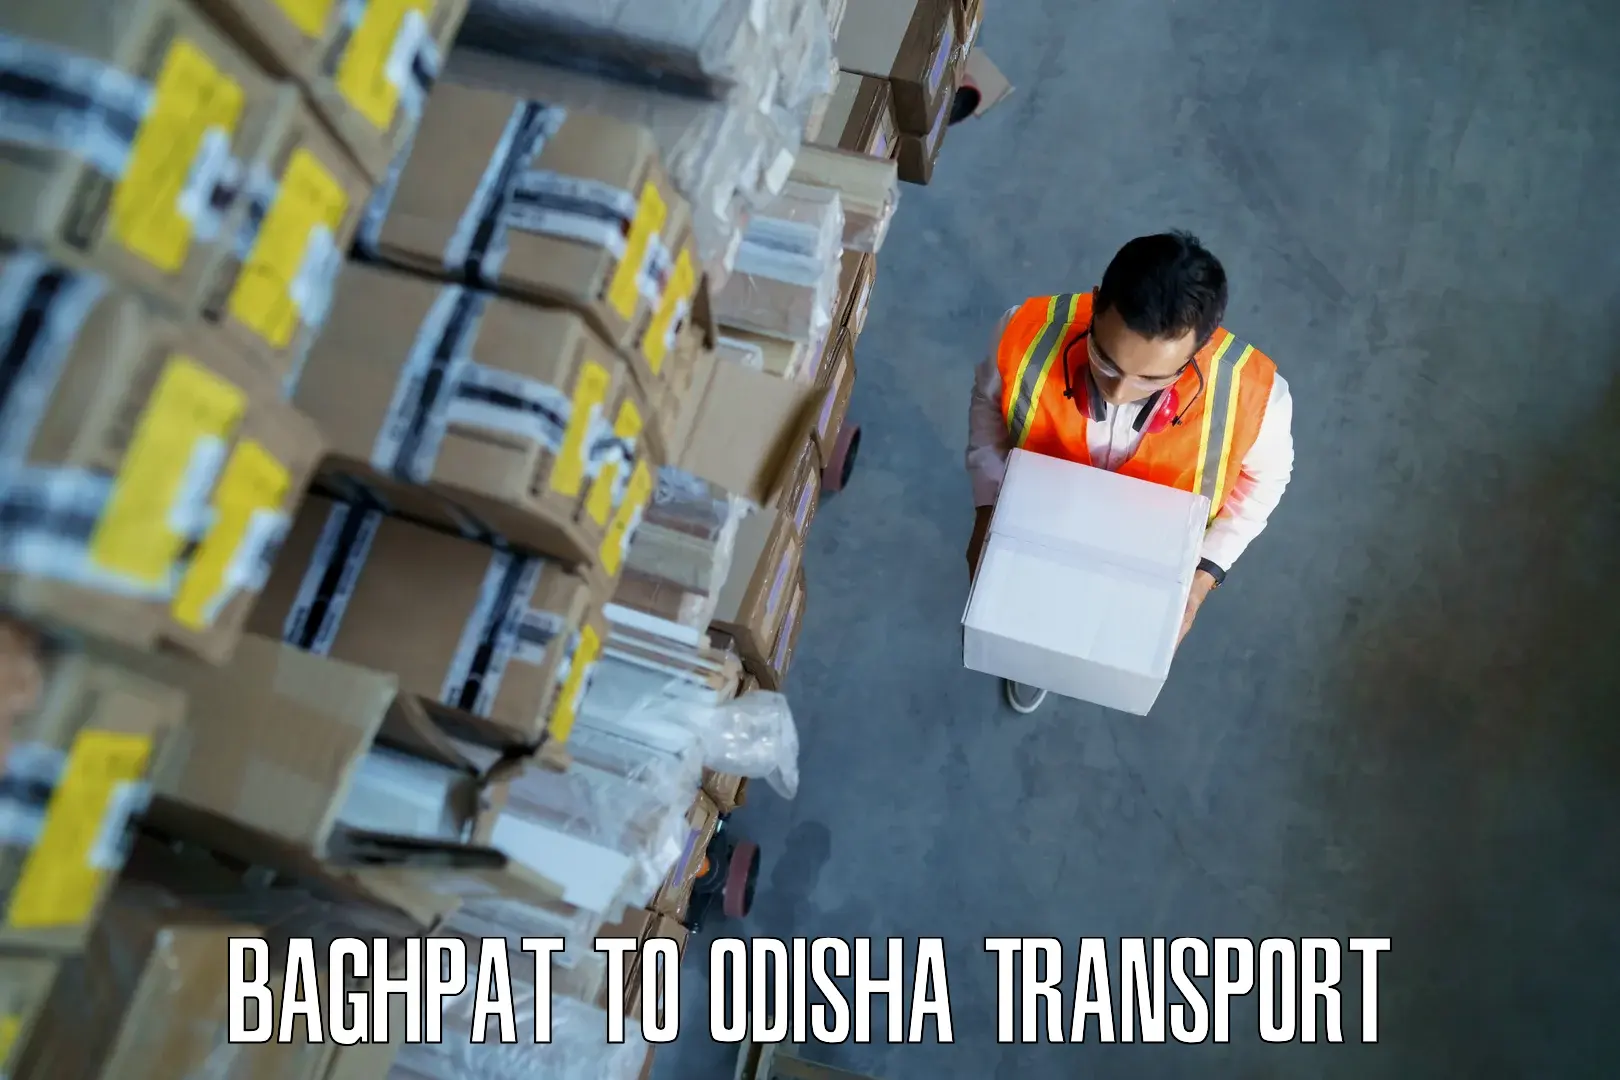 Road transport online services Baghpat to Kendujhar